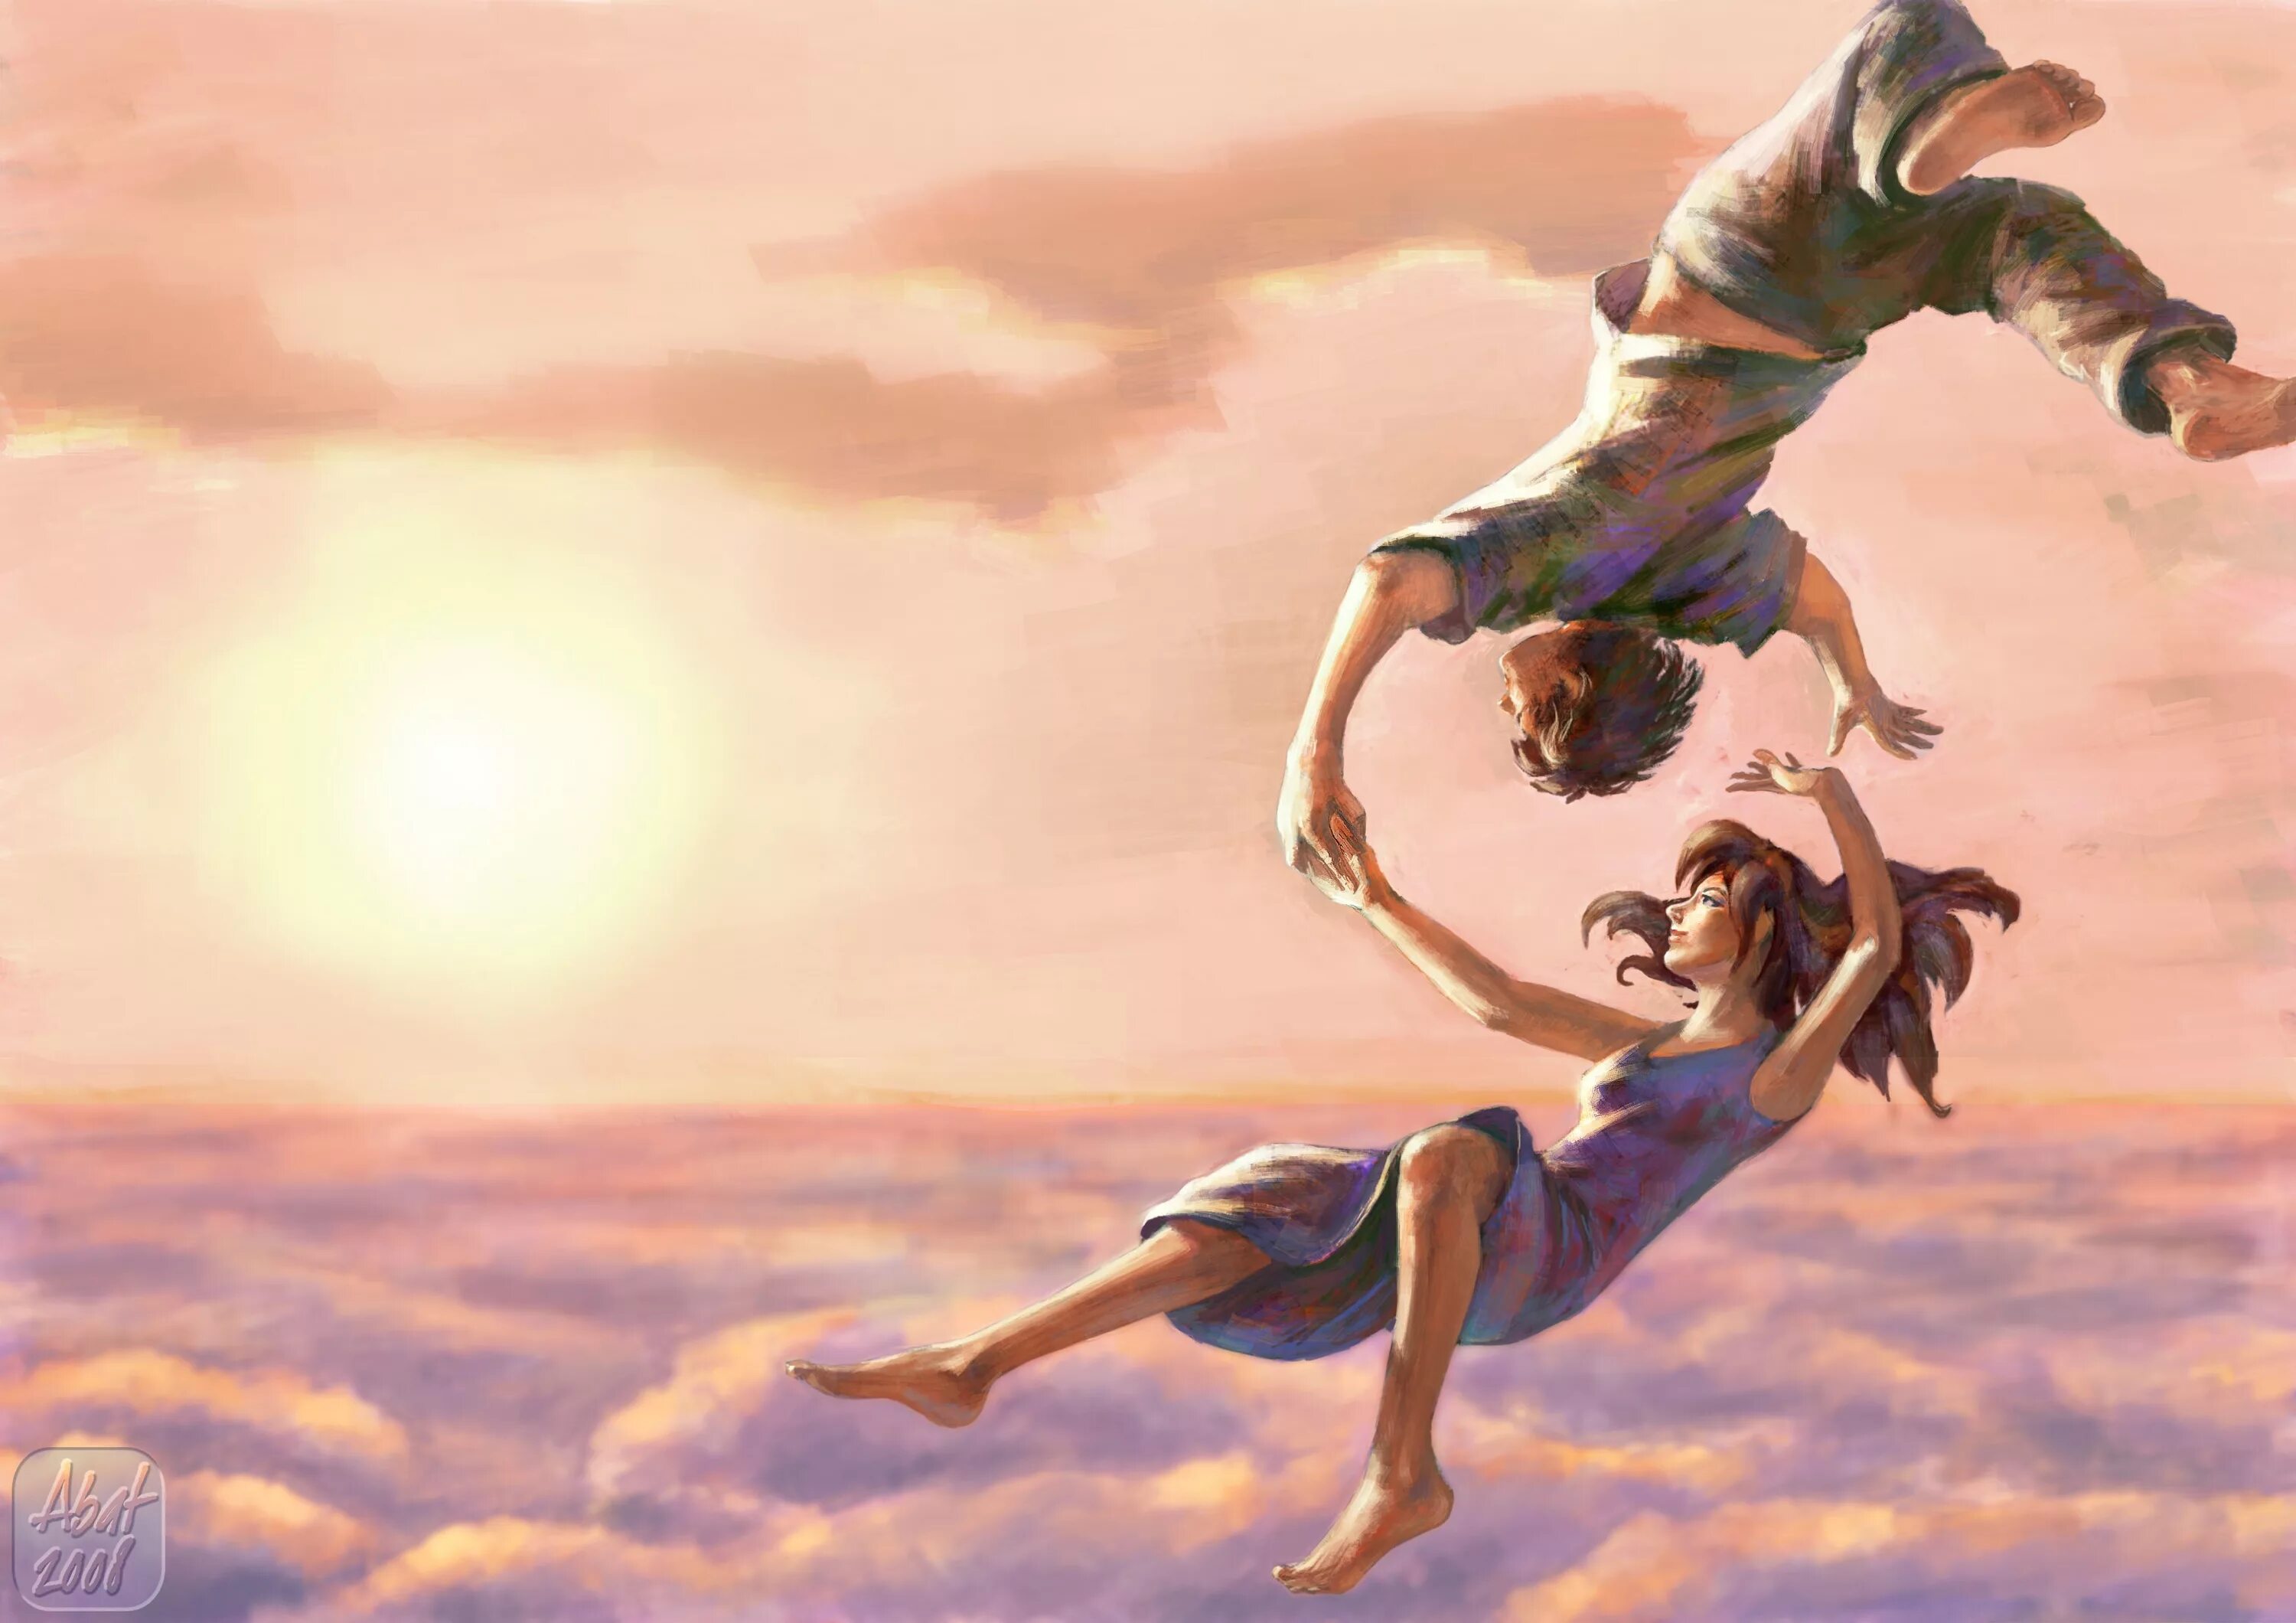 Полетели посмотрим. Девушка в прыжке. Картина счастье. Красивые иллюстрации. Полет души.